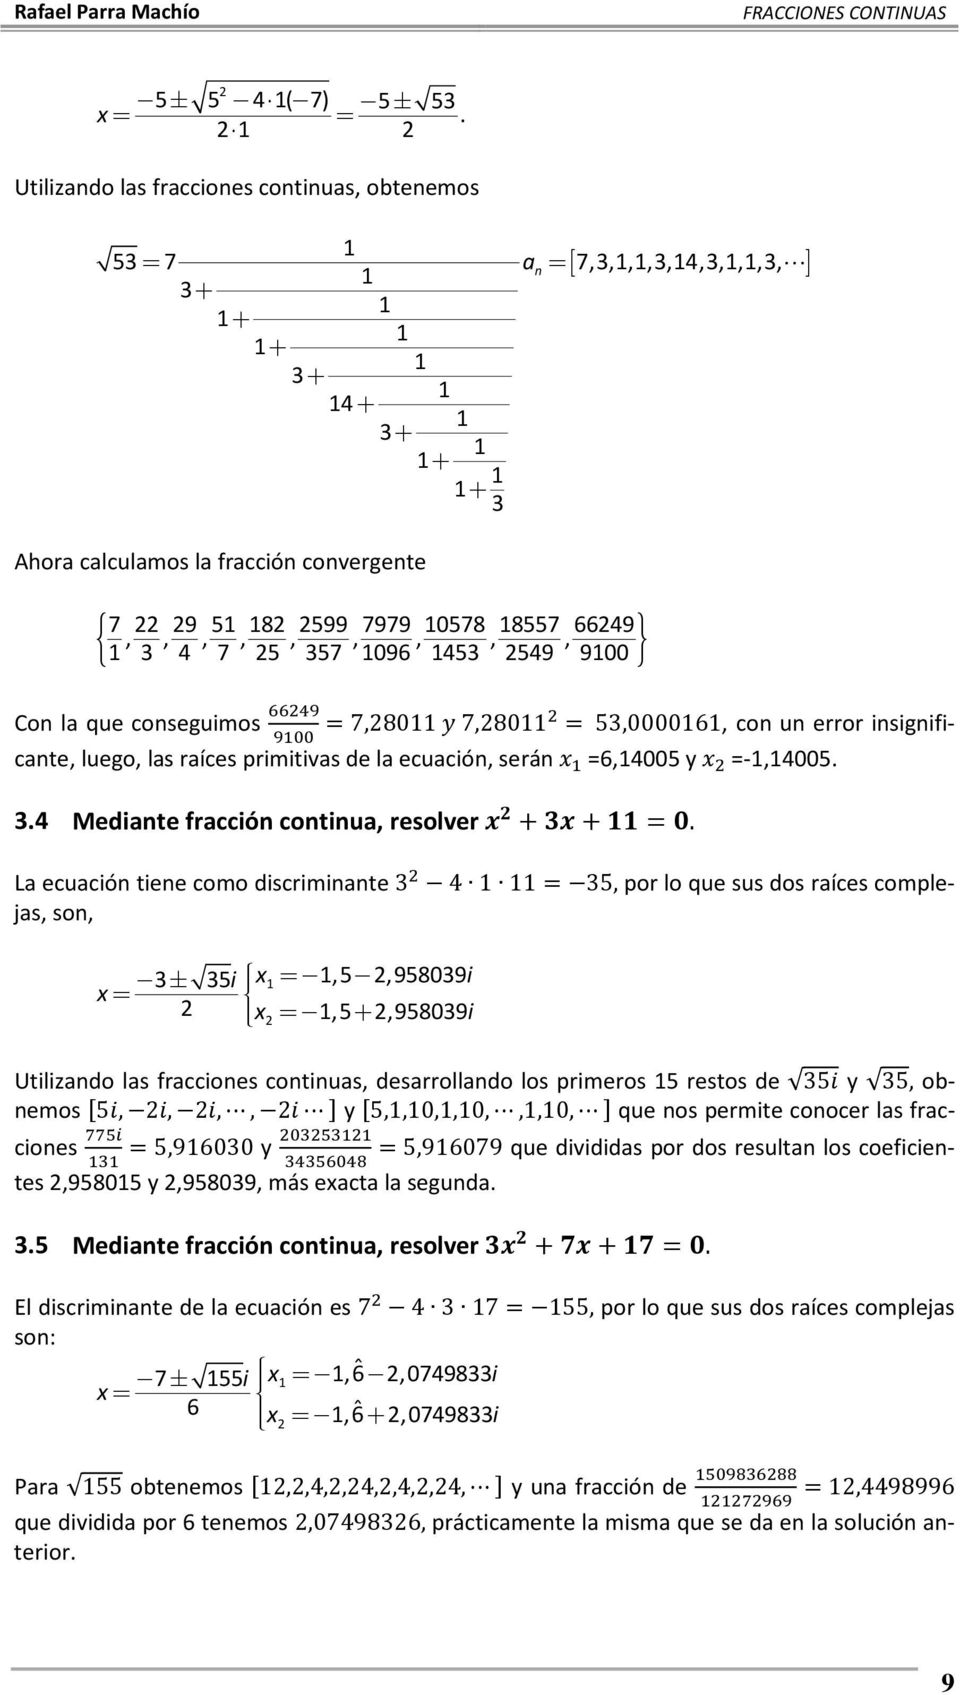 coseguimos 7,80 7,80 5,00006, co u error isigificate, luego, las raíces primitivas de la ecuació, será 6,4005 y -,4005..4 Mediate fracció cotiua, resolver + +.